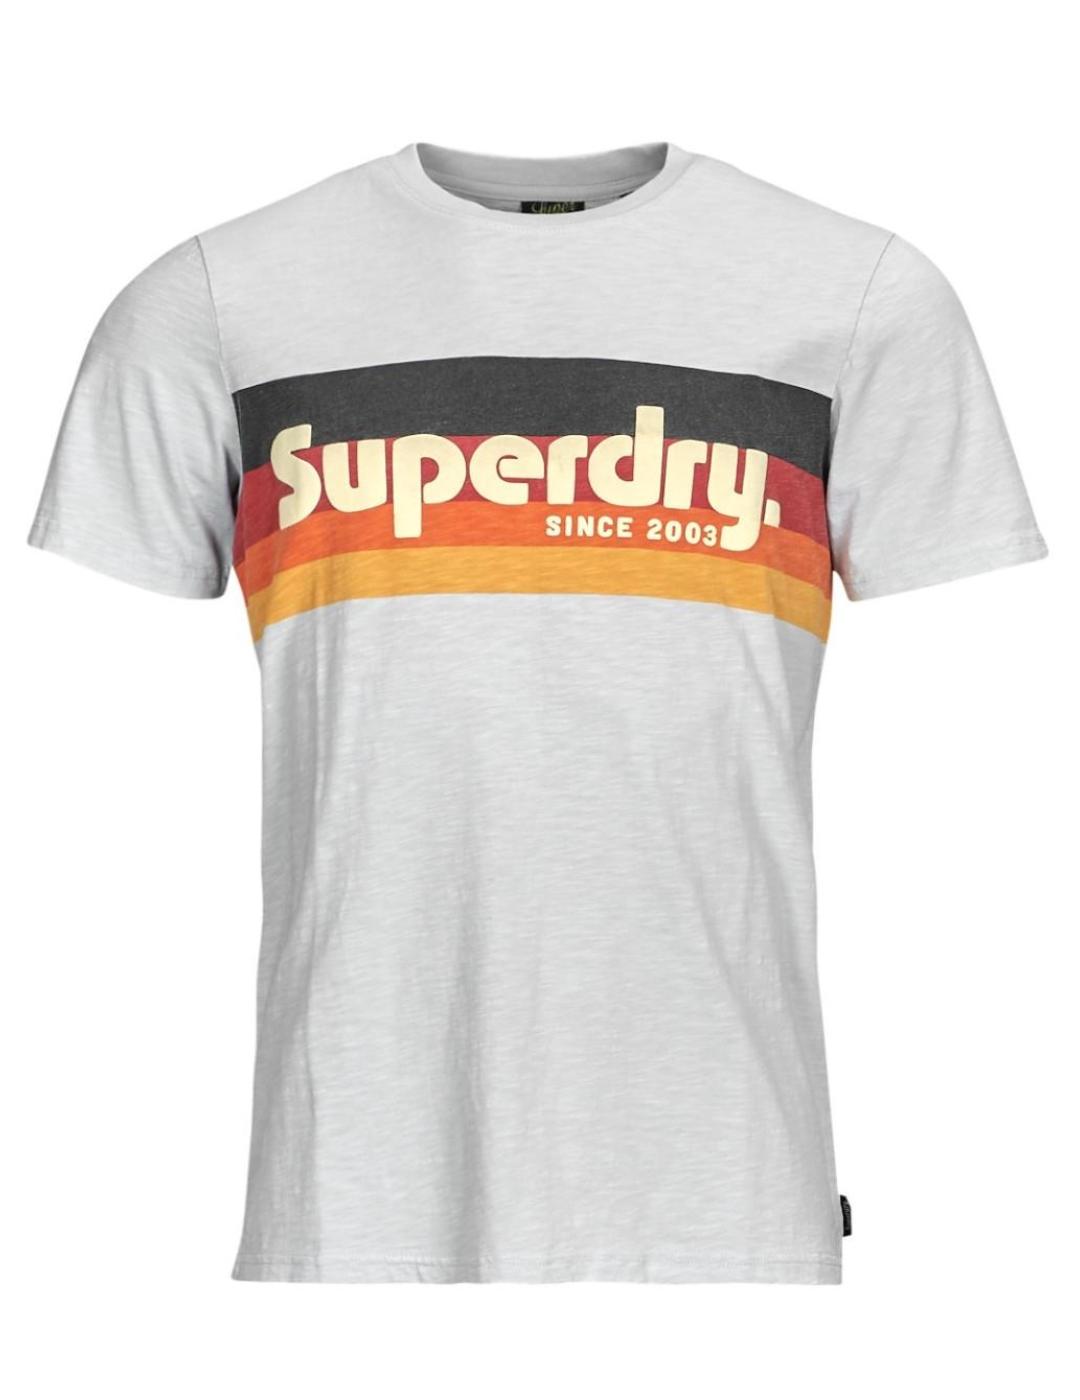 Camiseta Superdry Cali celeste manga corta para hombre